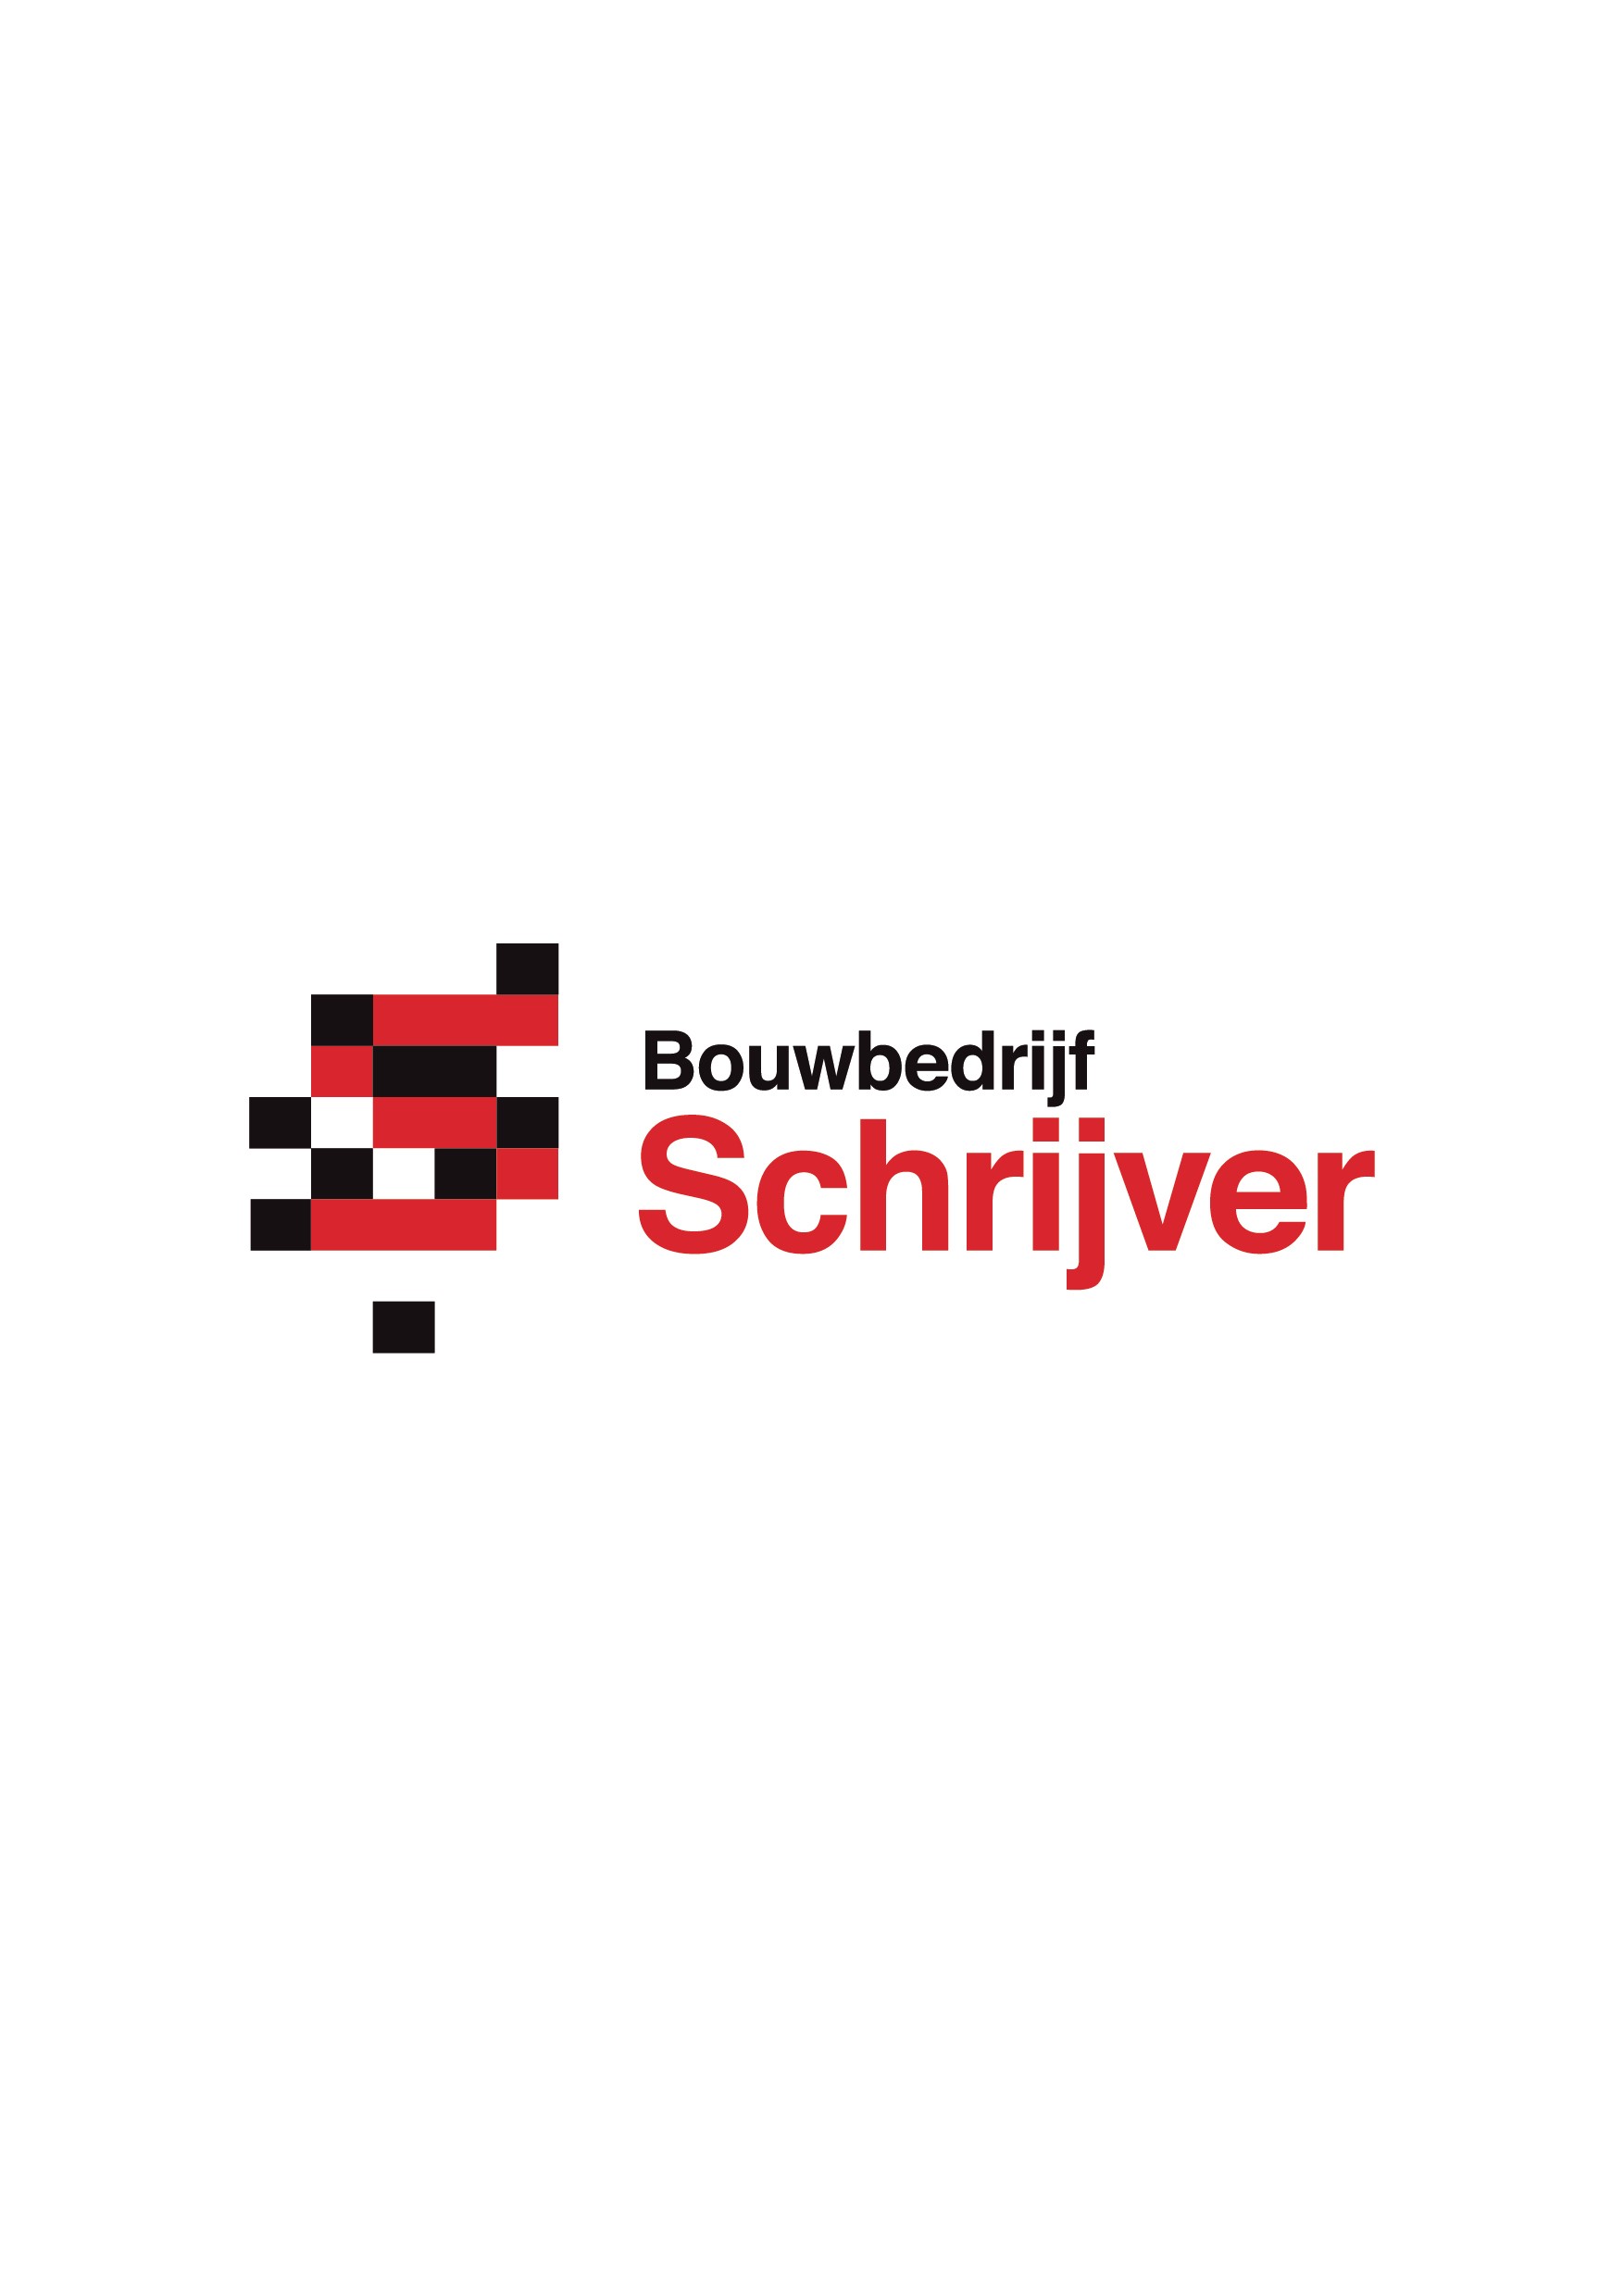 Logo Bouwbedrijf Schrijver